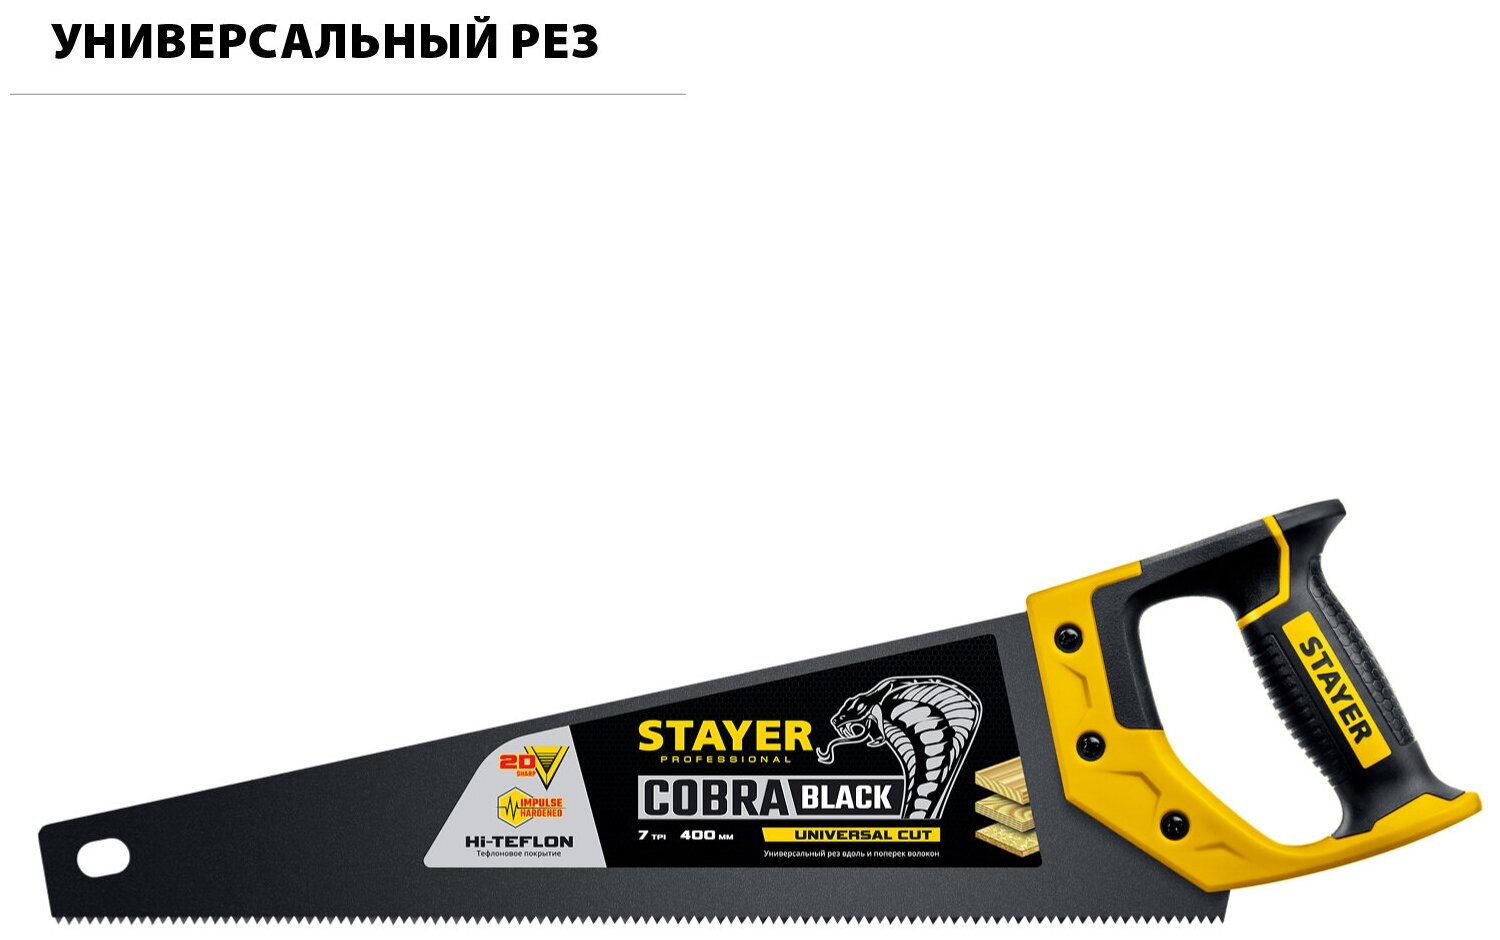 Ножовка STAYER BlackMax 400 мм. 7 TPI универсальный рез - фотография № 7